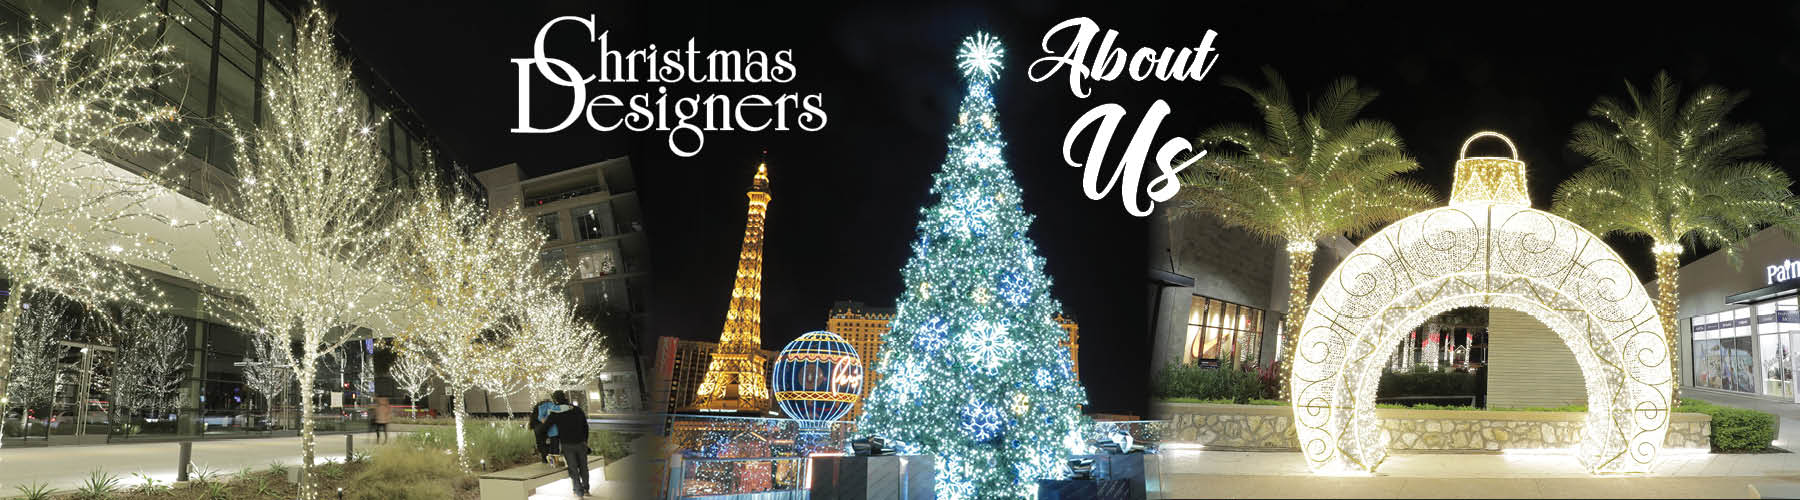 Christmas Designers Christmas Lights